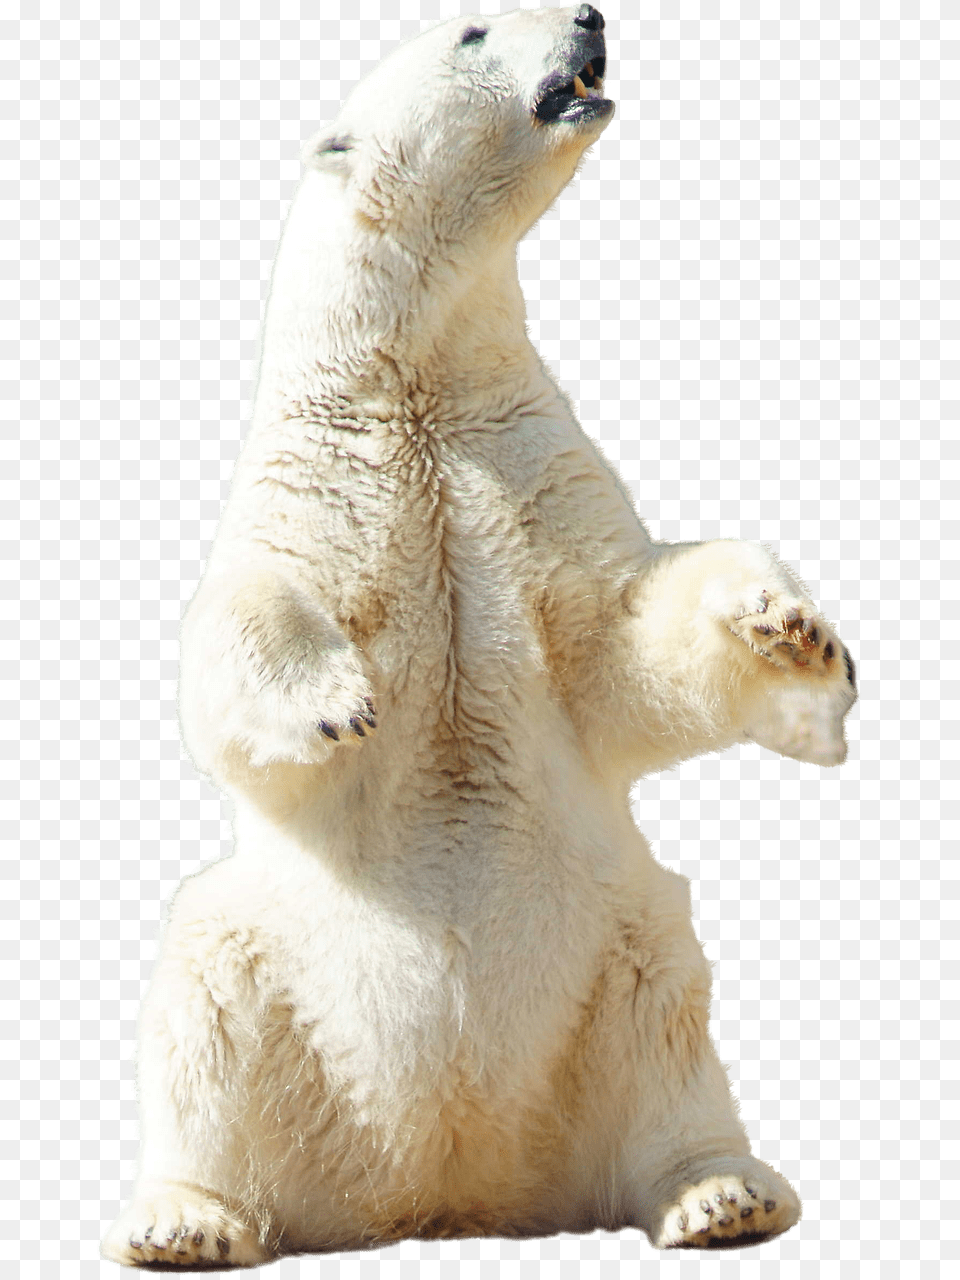 Polar Bear Sitting, Animal, Mammal, Wildlife, Polar Bear Free Png Download